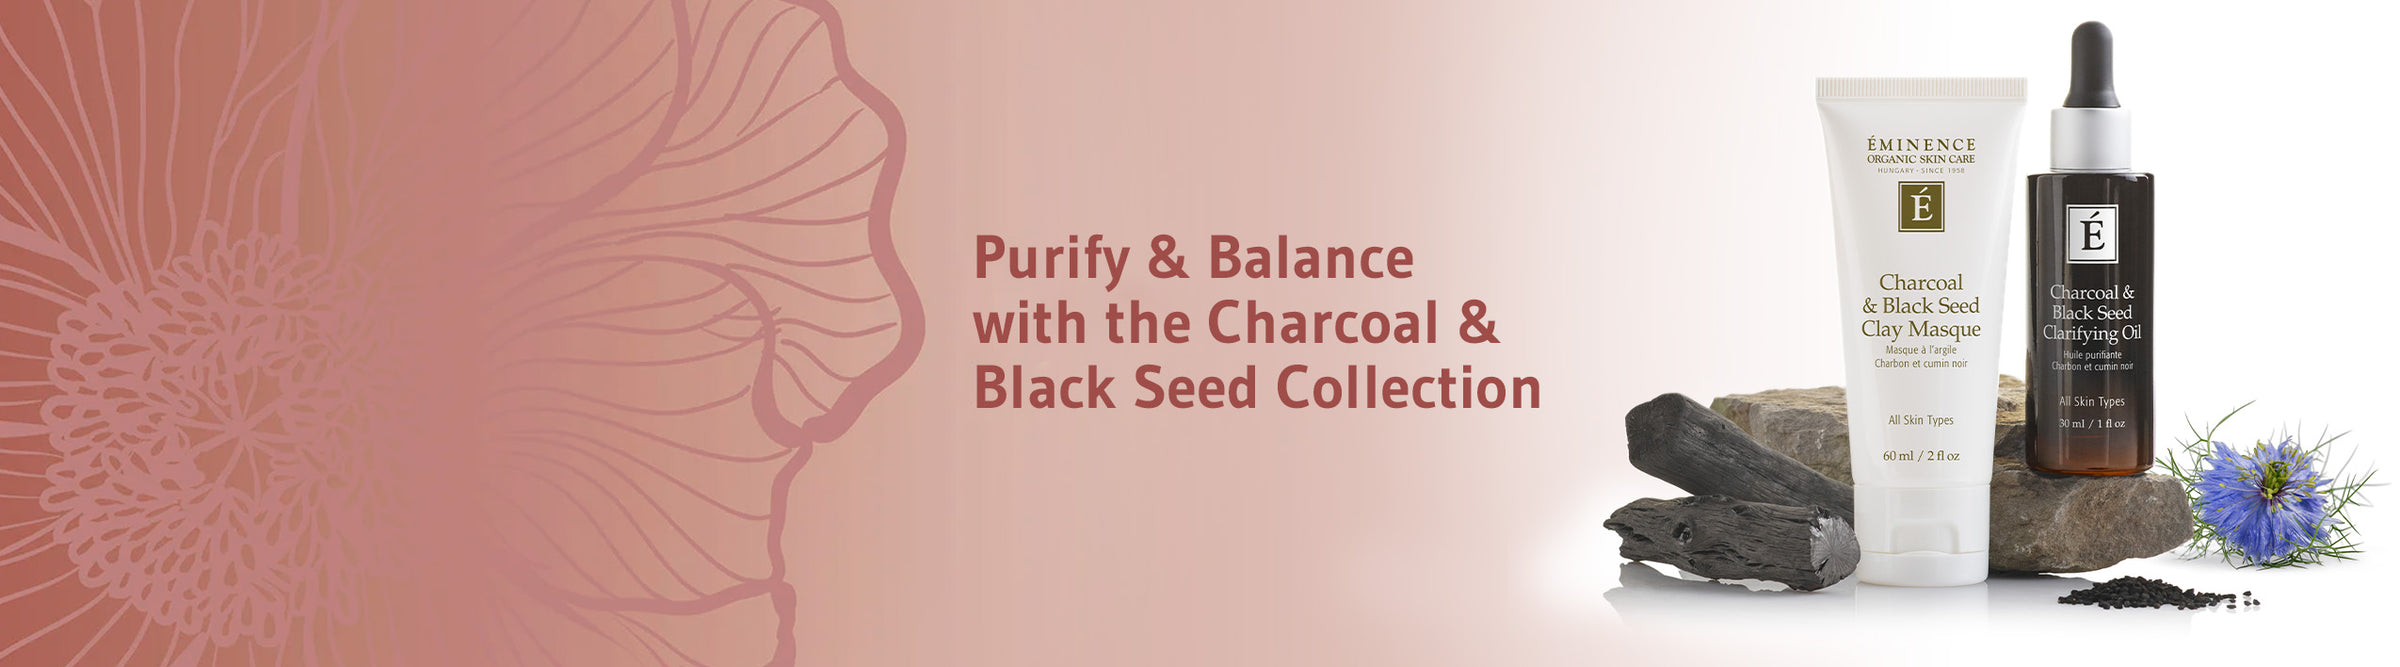 Charcoal & Black Seed